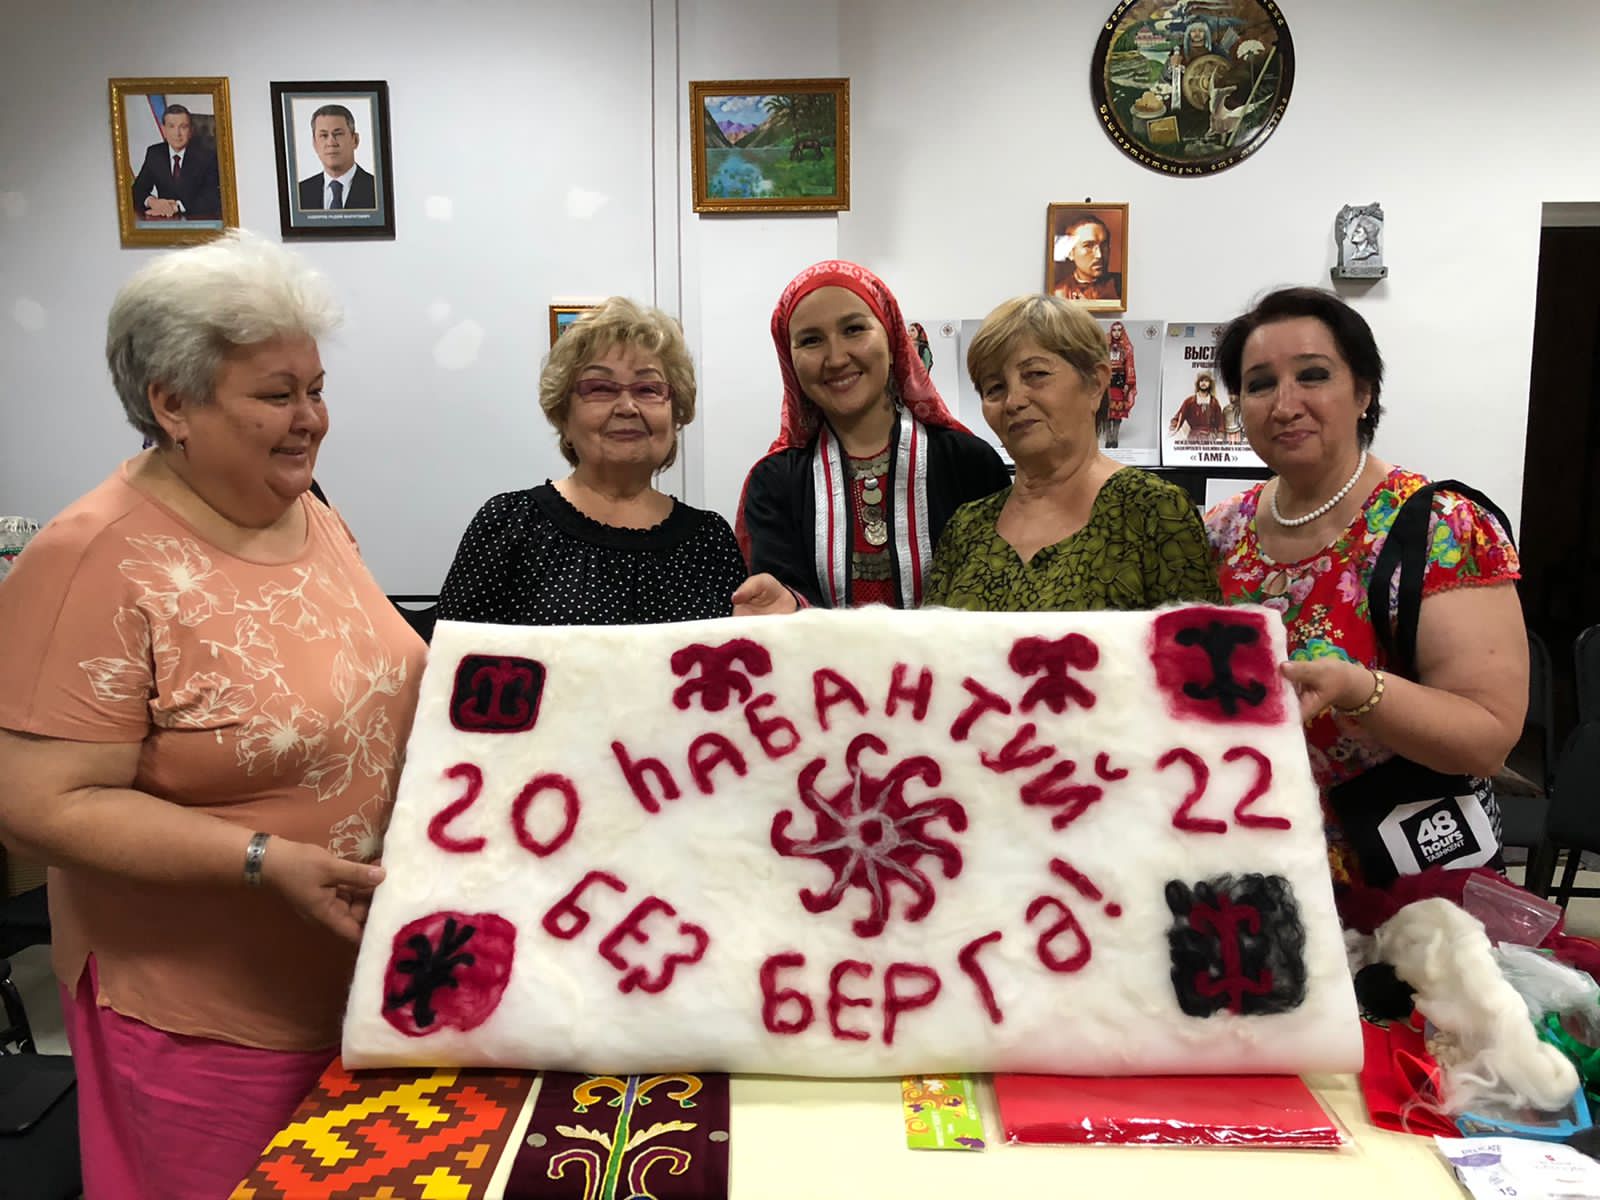 Башкирские мастера народного творчества провели мастер-классы в  Узбекистане